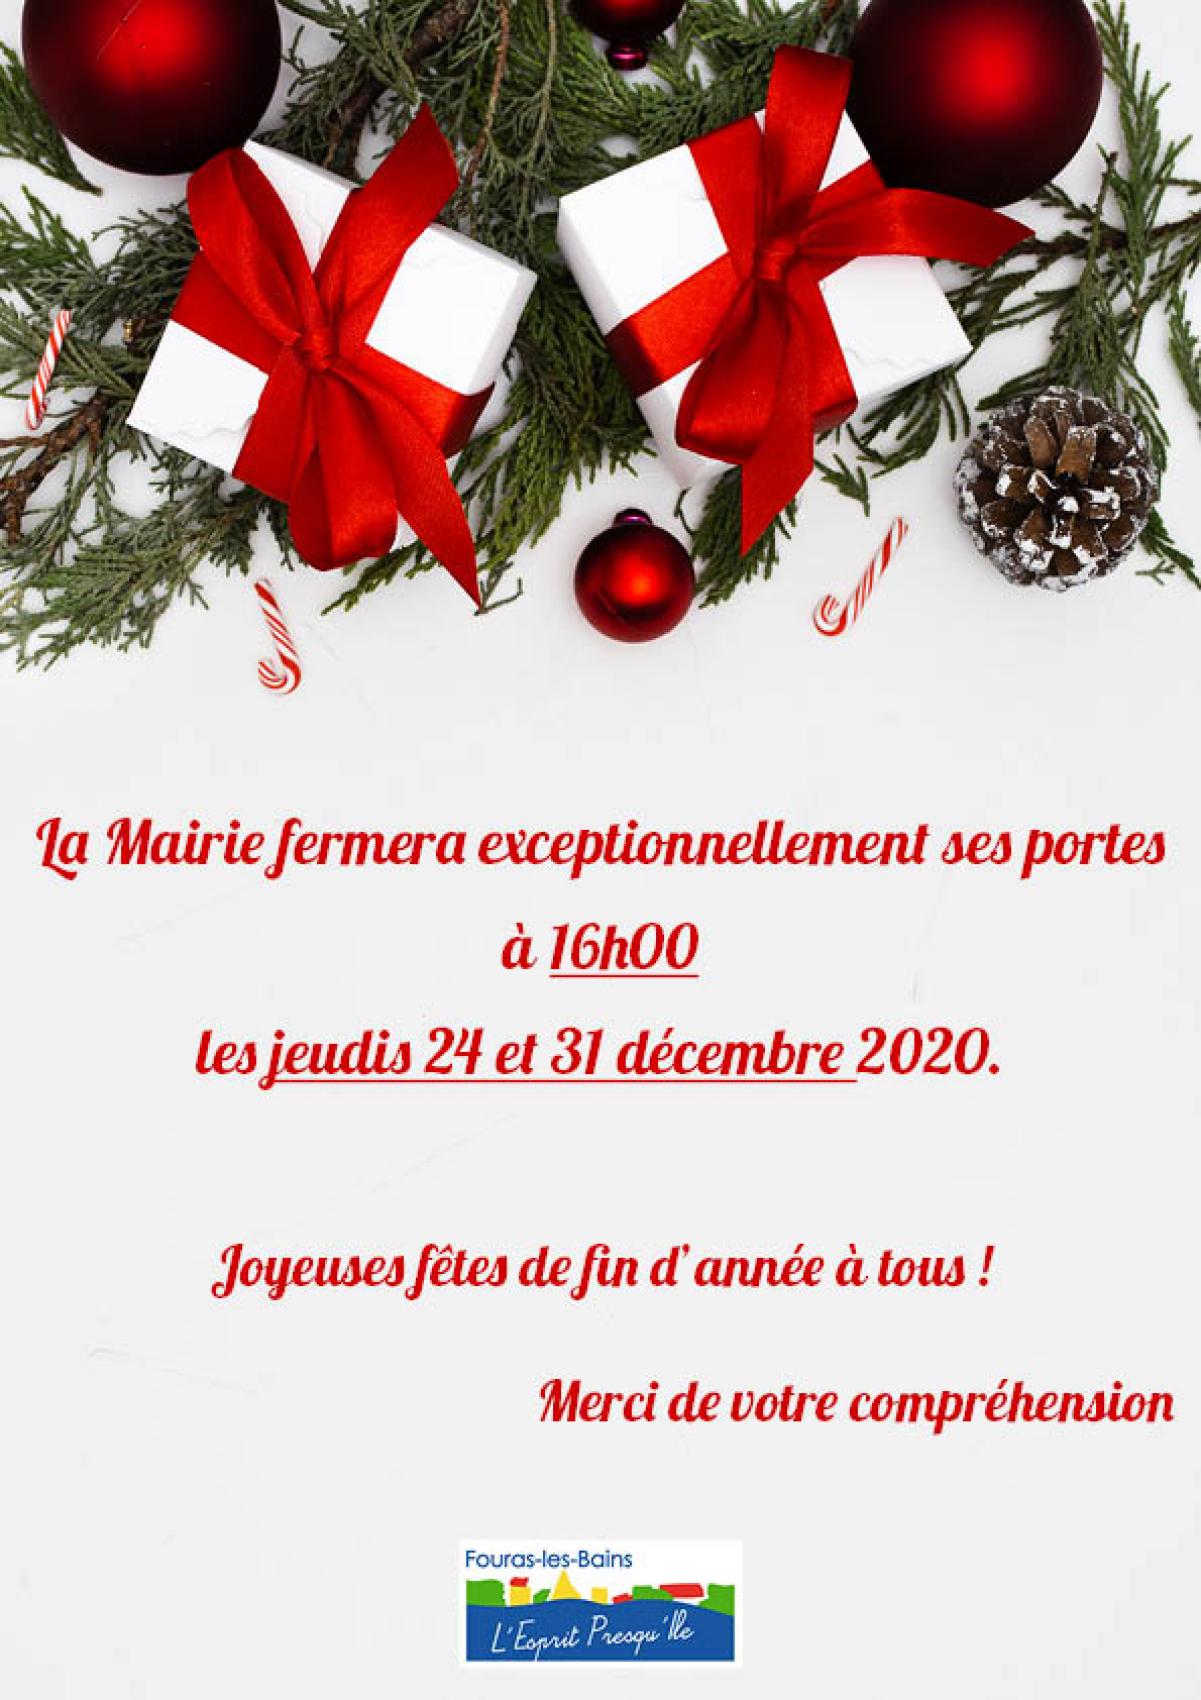 FERMETURE EXCEPTIONNELLE DE LA MAIRIE À 16h - JEUDIS 25 DÉCEMBRE 2020 ET 1er JANVIER 2021